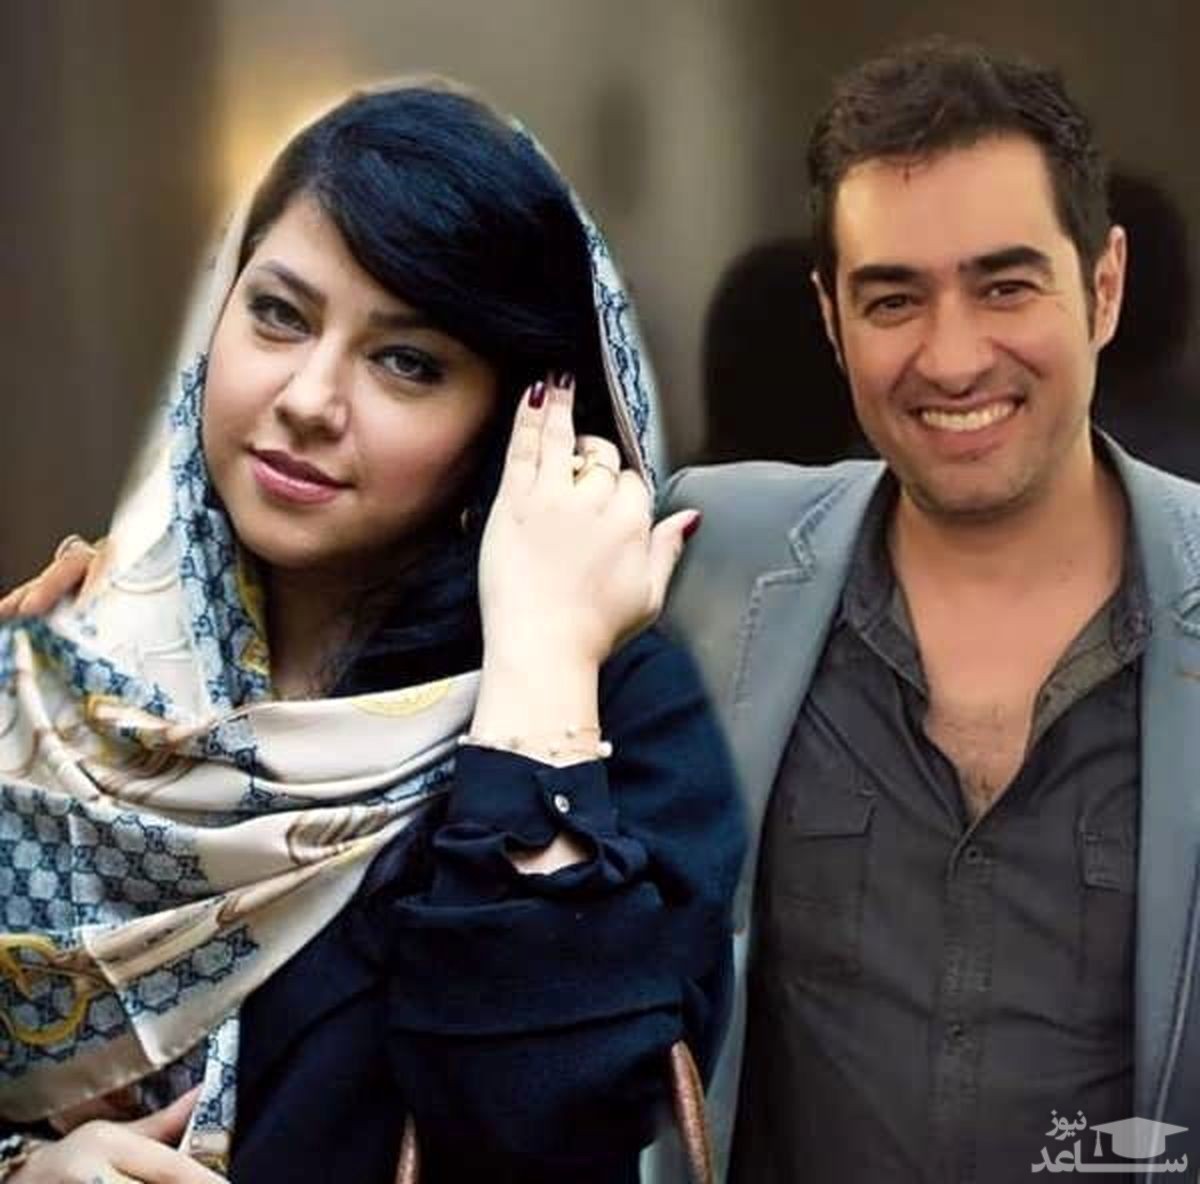 دلیل طلاق شهاب حسینی از همسرش فاش شد